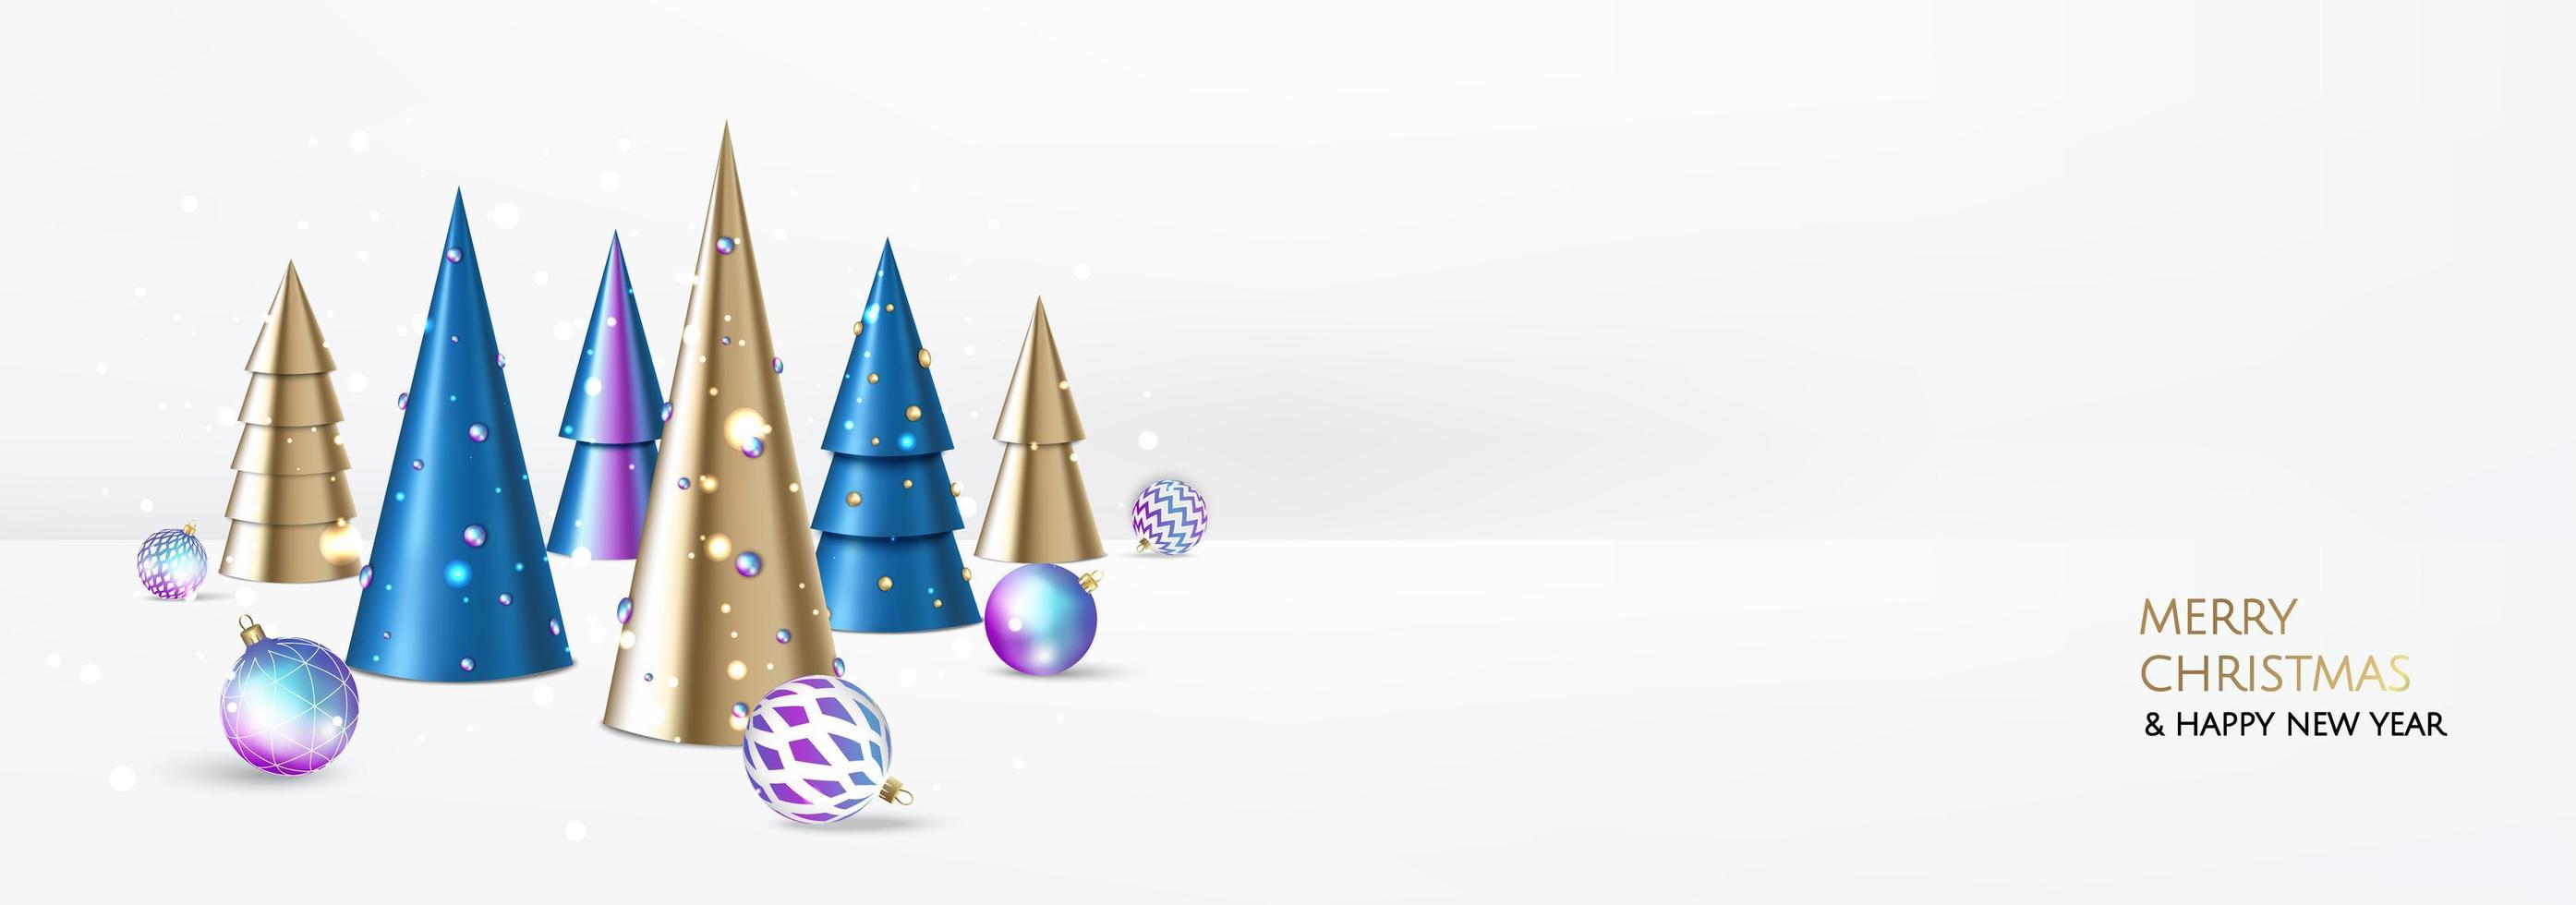 buon Natale e Felice Anno nuovo. sfondo festivo di natale con oggetti 3d realistici, palline blu e oro, albero di natale conico. composizione del disegno di caduta di levitazione. vettore